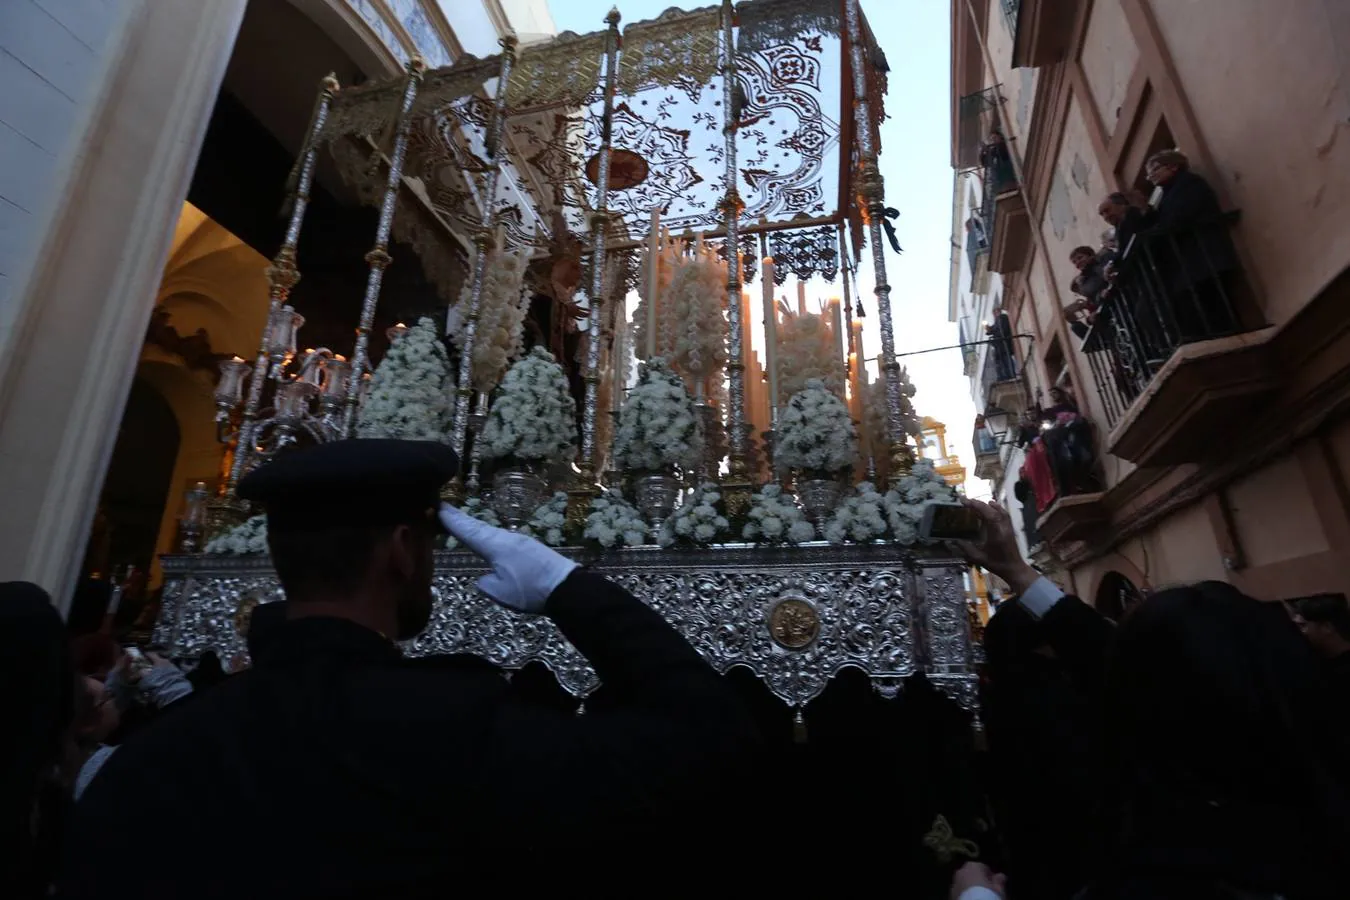 FOTOS: Nazareno de Santa María en la Semana Santa de Cádiz 2018